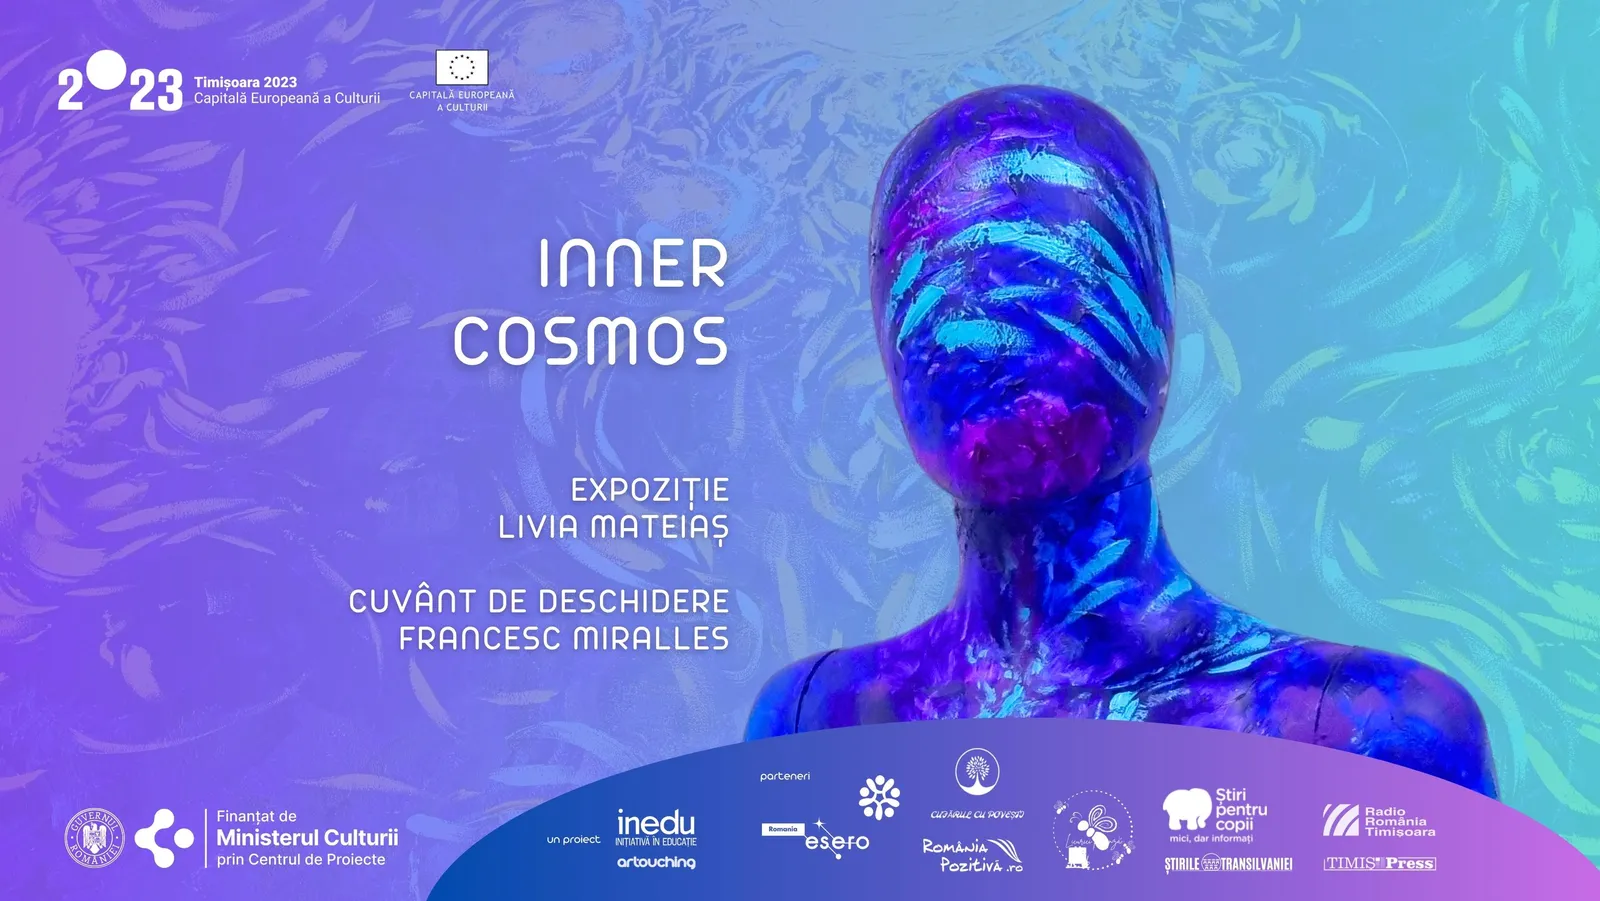 Inner Cosmos: Livia Mateiaș Exhibition